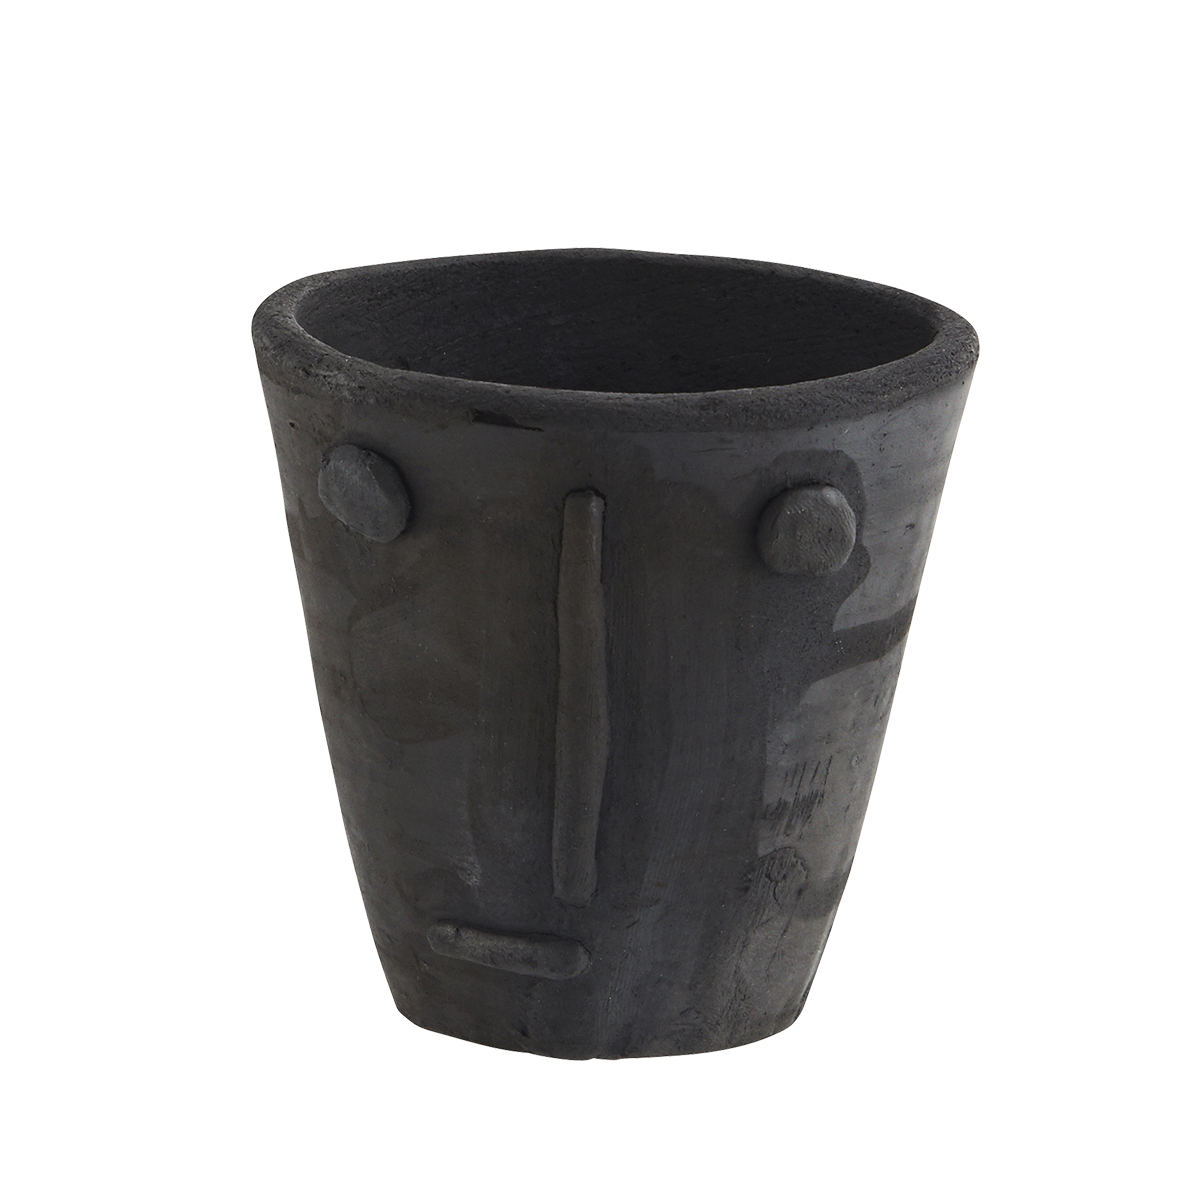 Handmade clay flower pot w/ face imprint